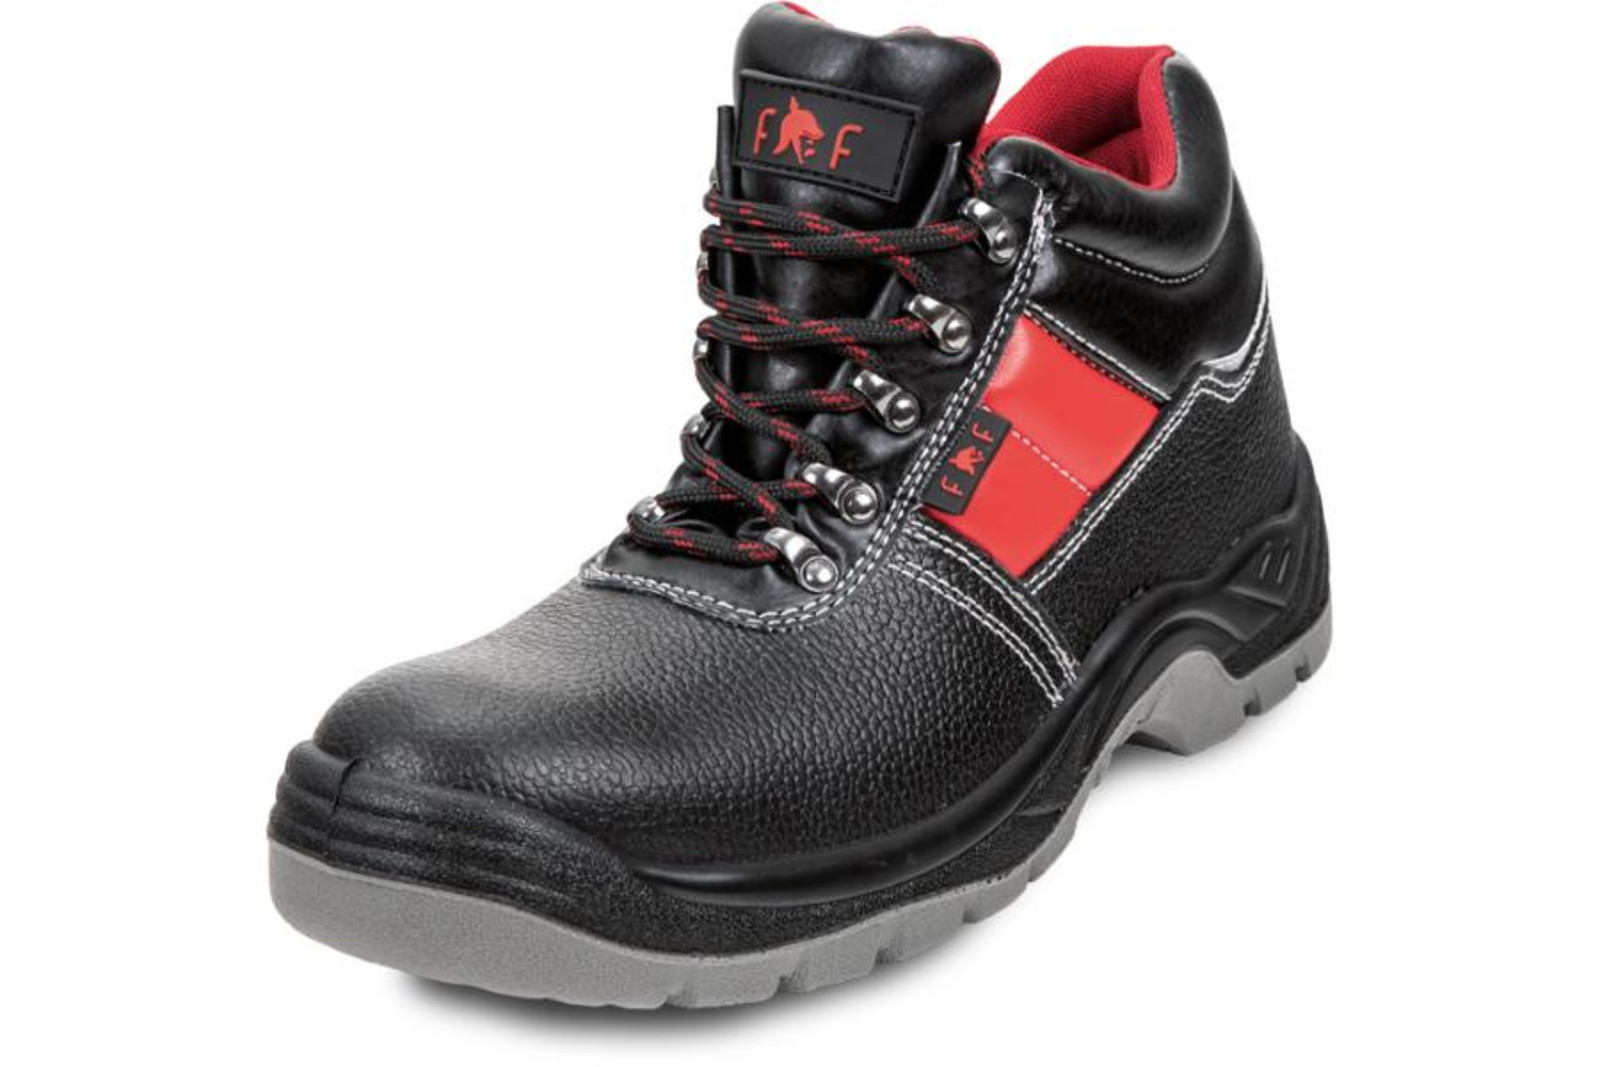 Bezpečnostná obuv SC 03-003 S3 - veľkosť: 47, farba: čierna